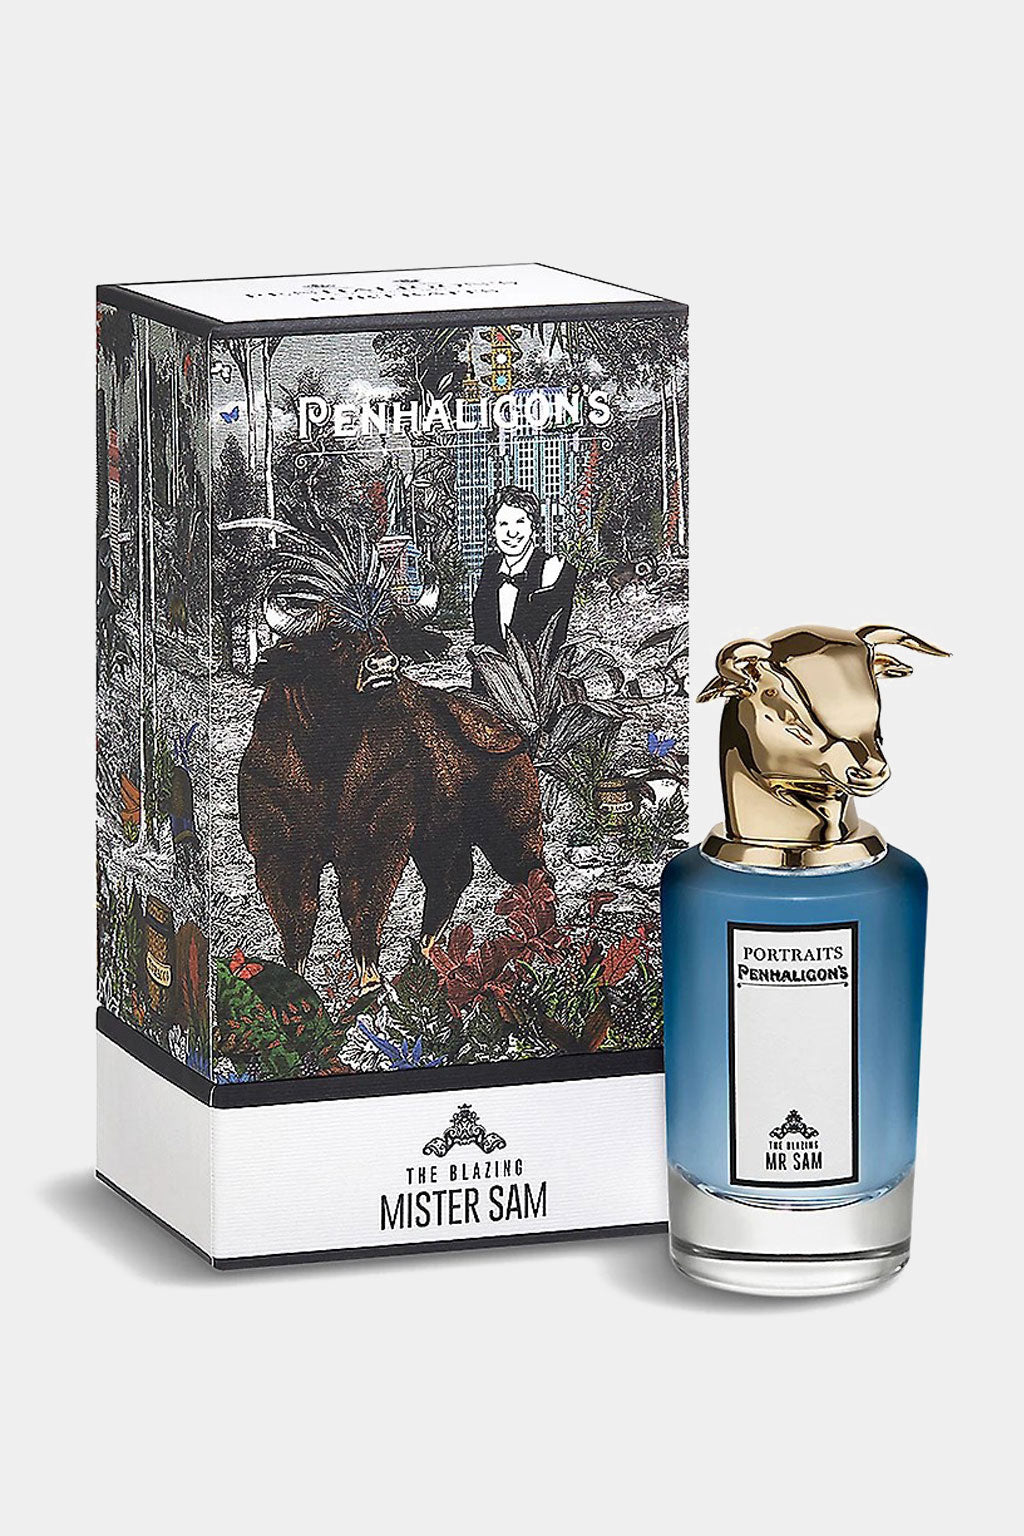 Penhaligon's - The Blazing Mister Sam Eau de Parfum